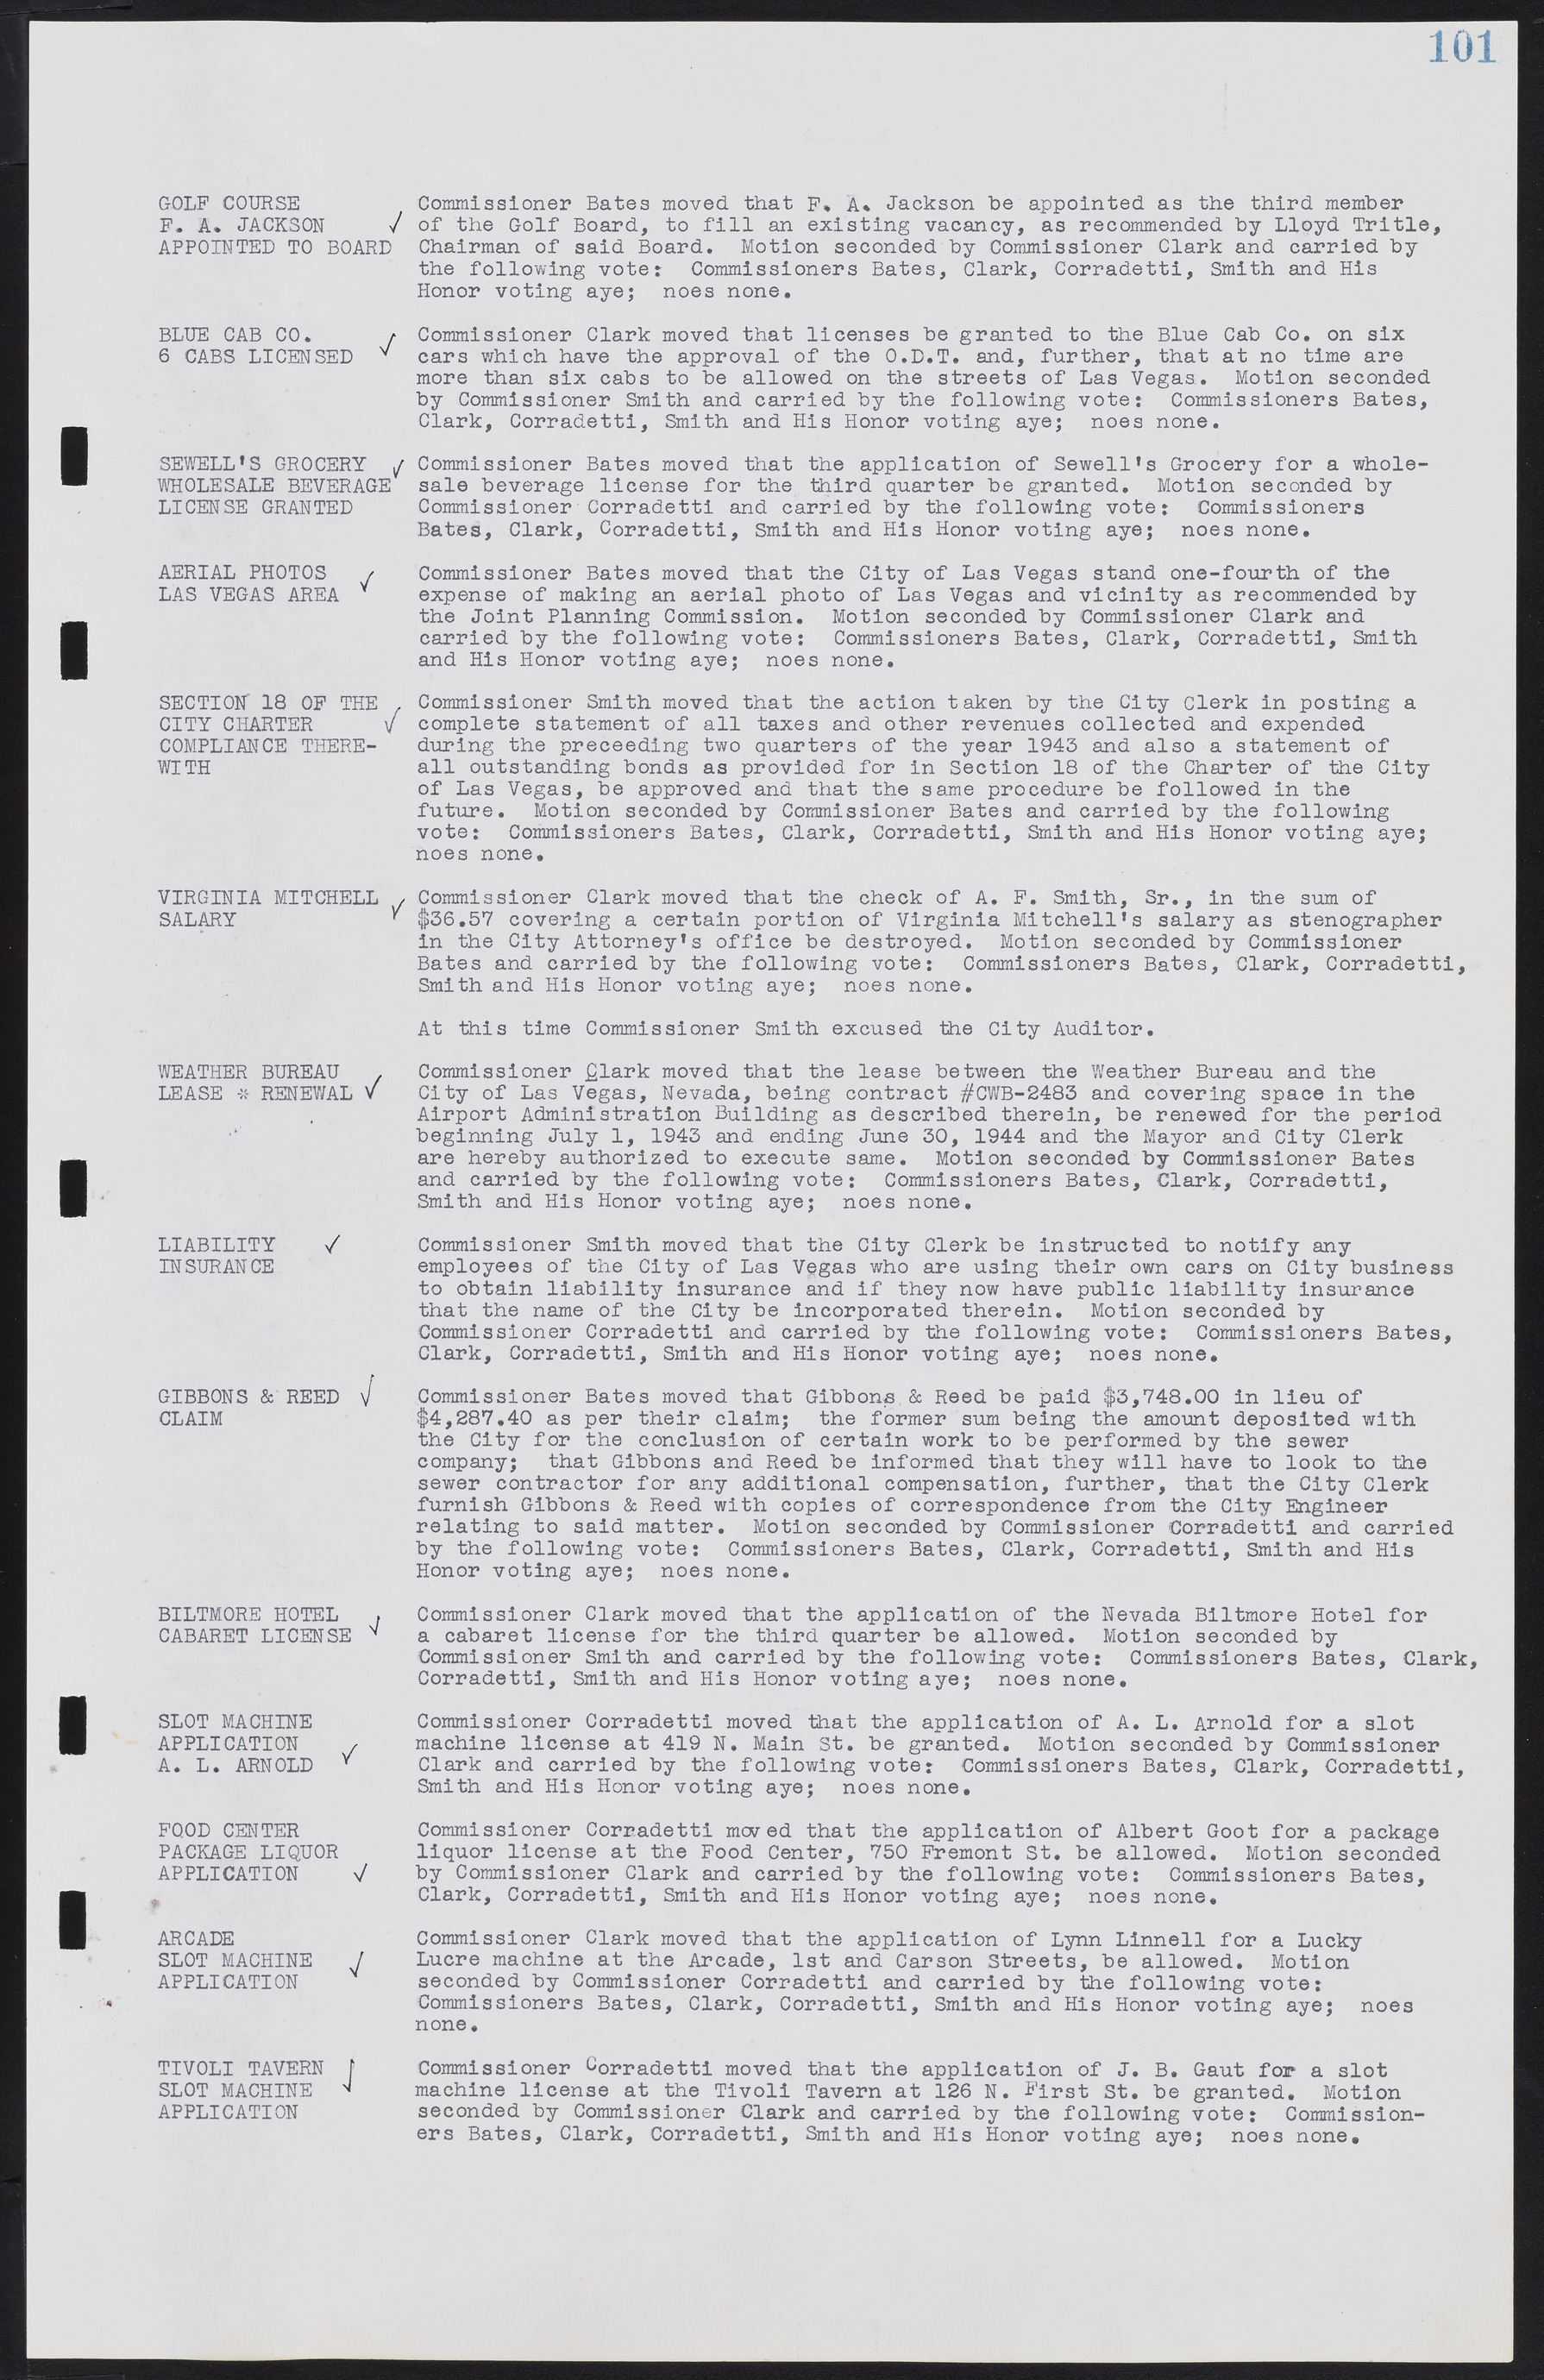 Las Vegas City Commission Minutes, August 11, 1942 to December 30, 1946, lvc000005-115